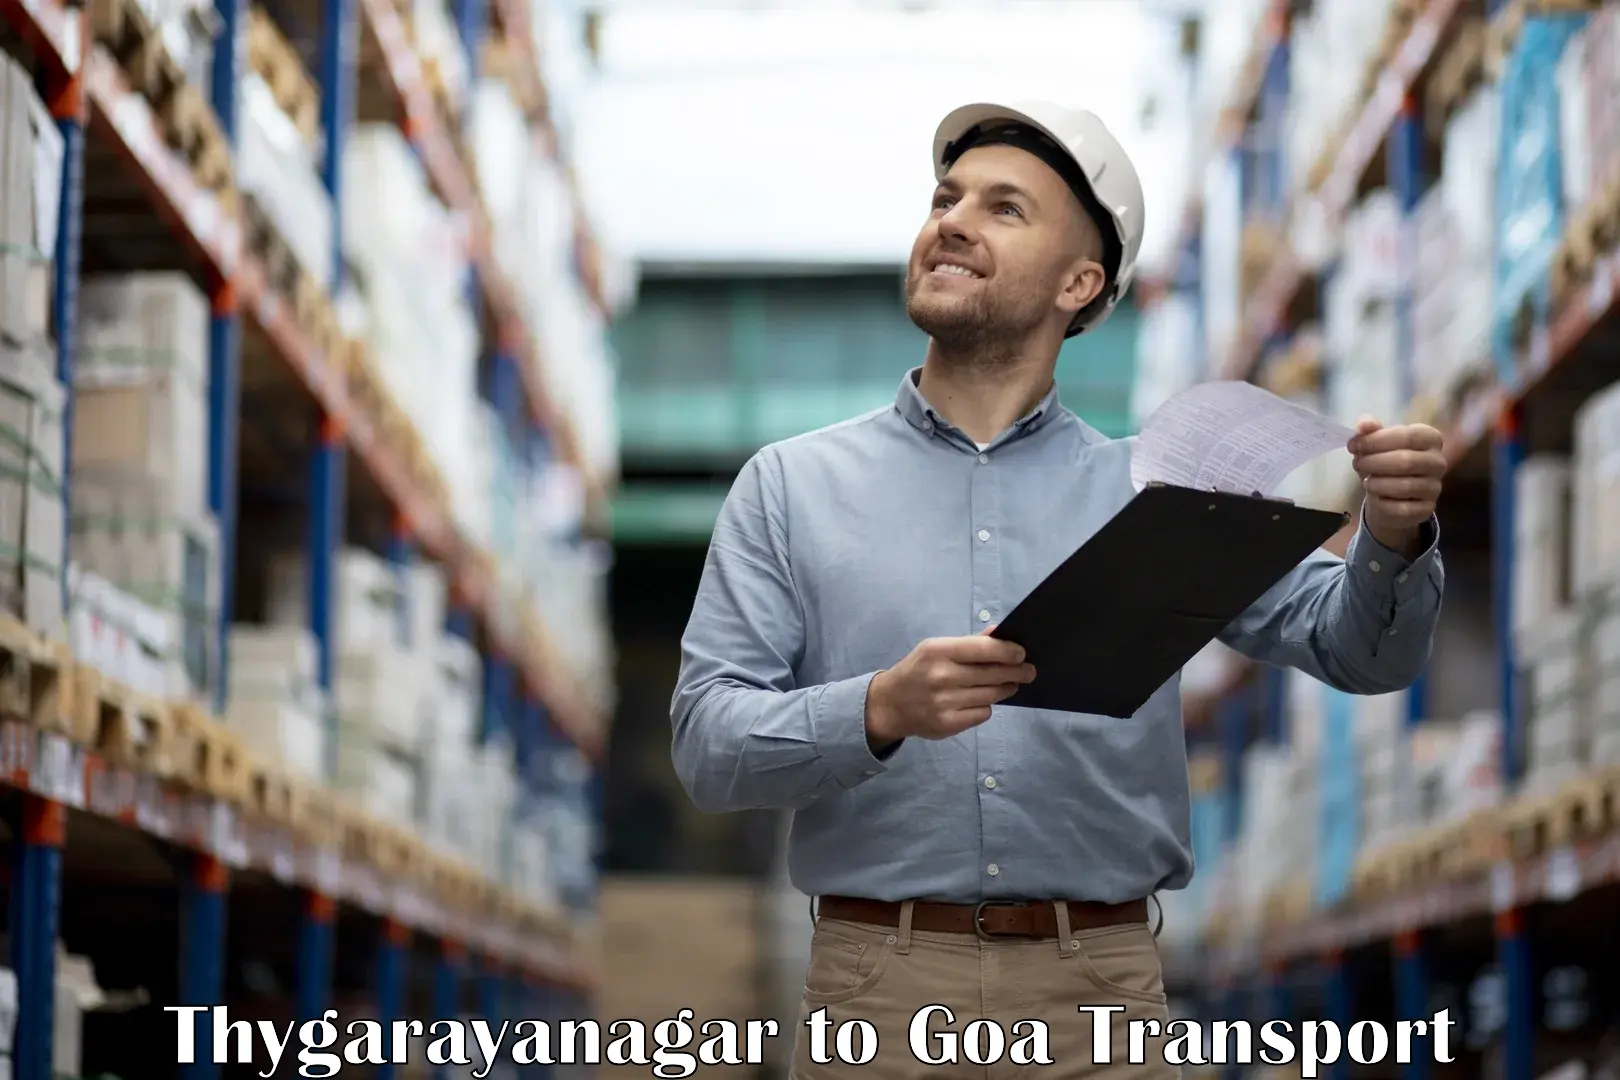 Shipping services Thygarayanagar to NIT Goa